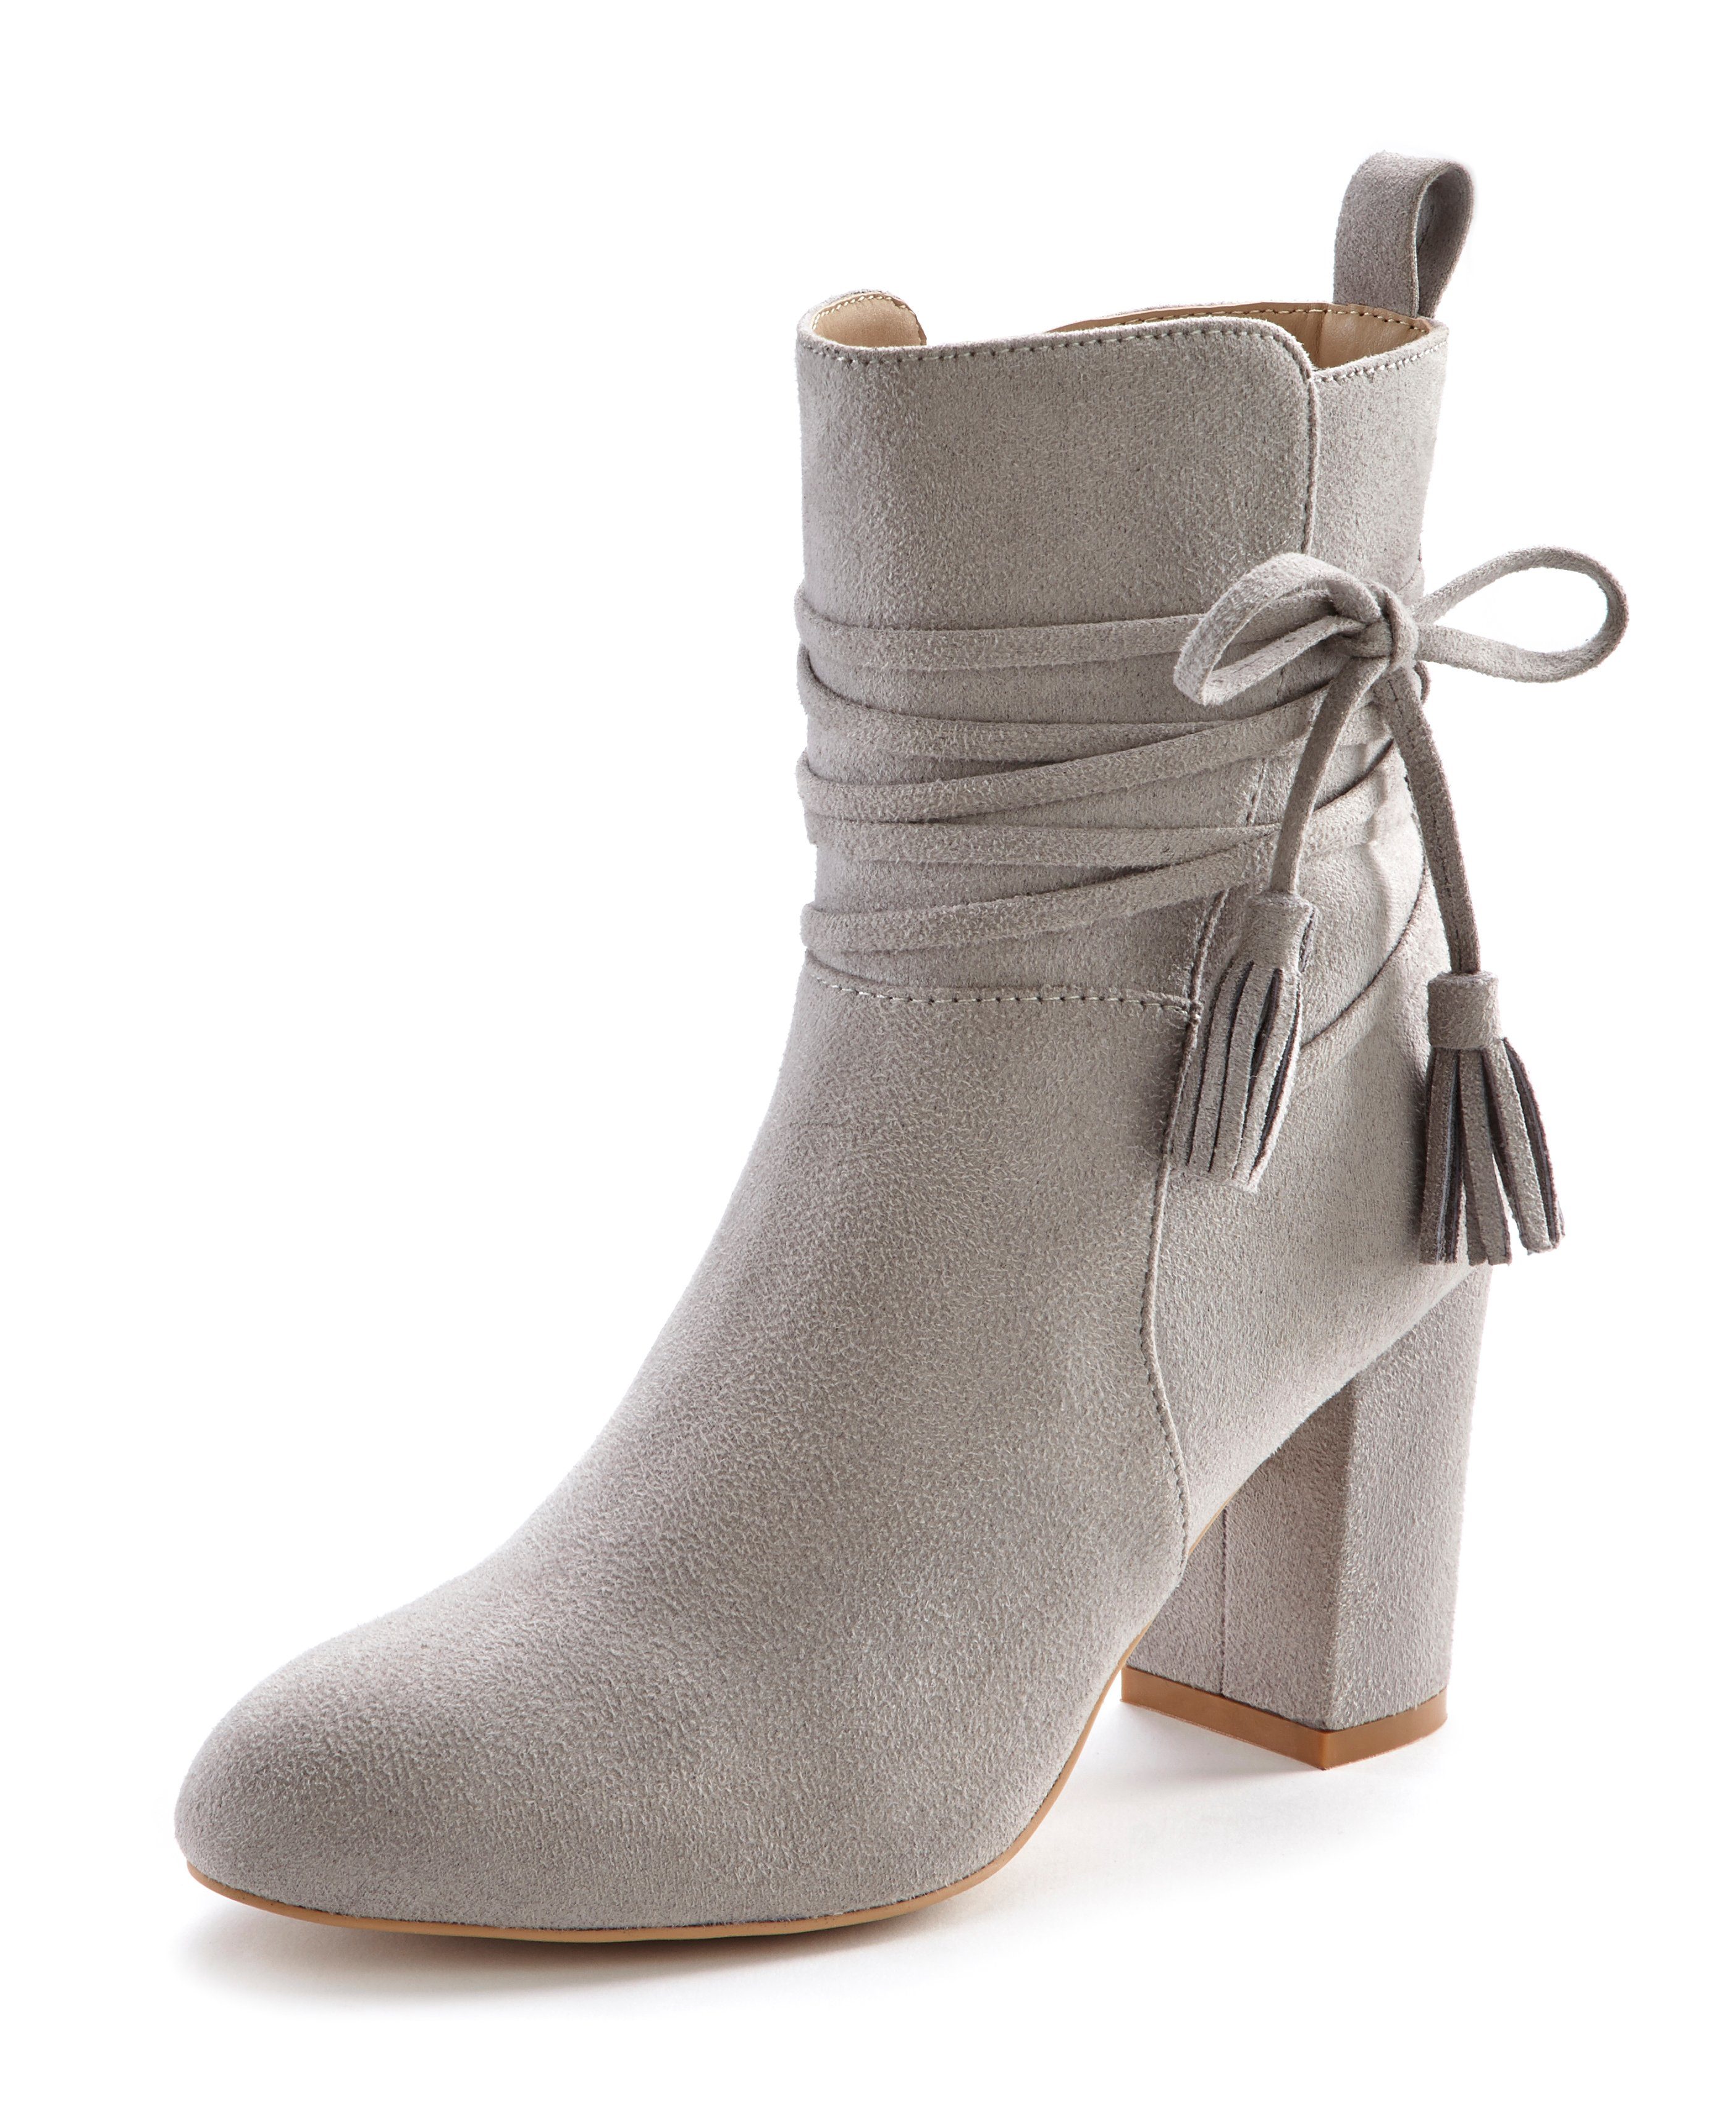 LASCANA Stiefelette mit Ankle Boots, Blockabsatz, Stiefel hellgrau High-Heel-Stiefelette